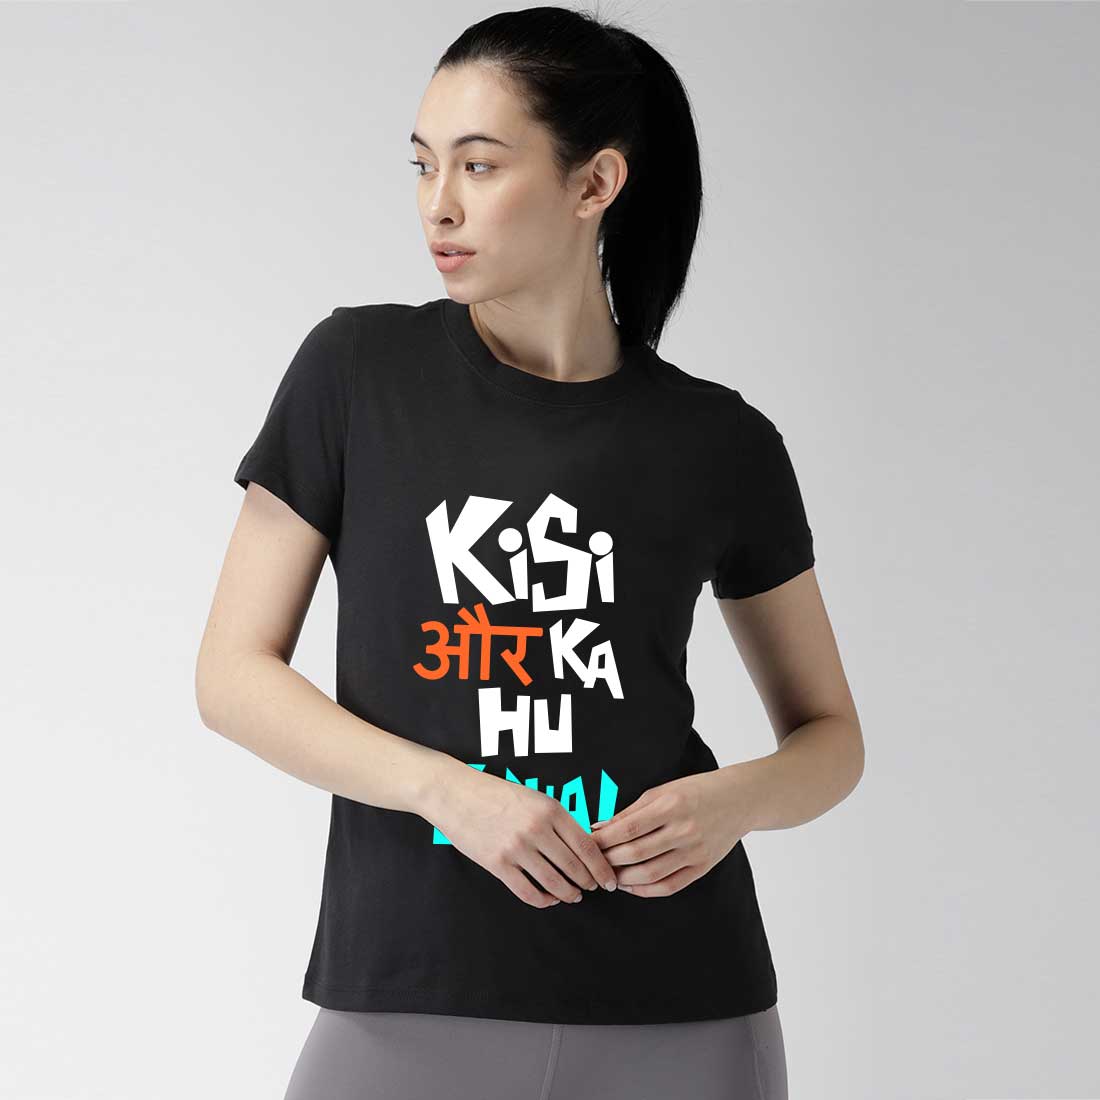 Kisi Aur Ka Hu Filhal Black Women T-Shirt